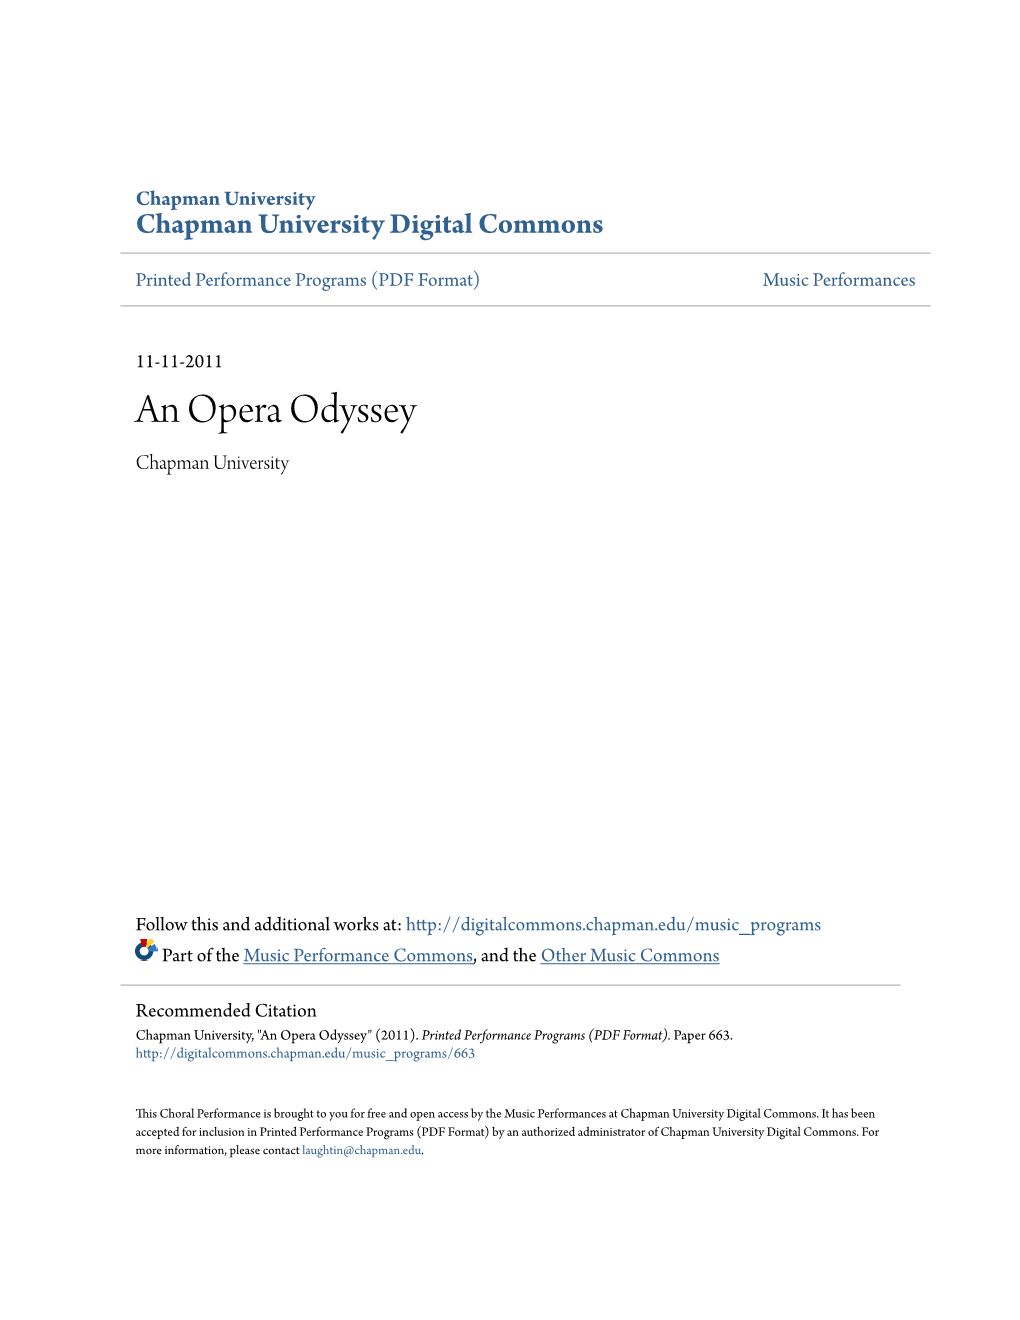 An Opera Odyssey Chapman University